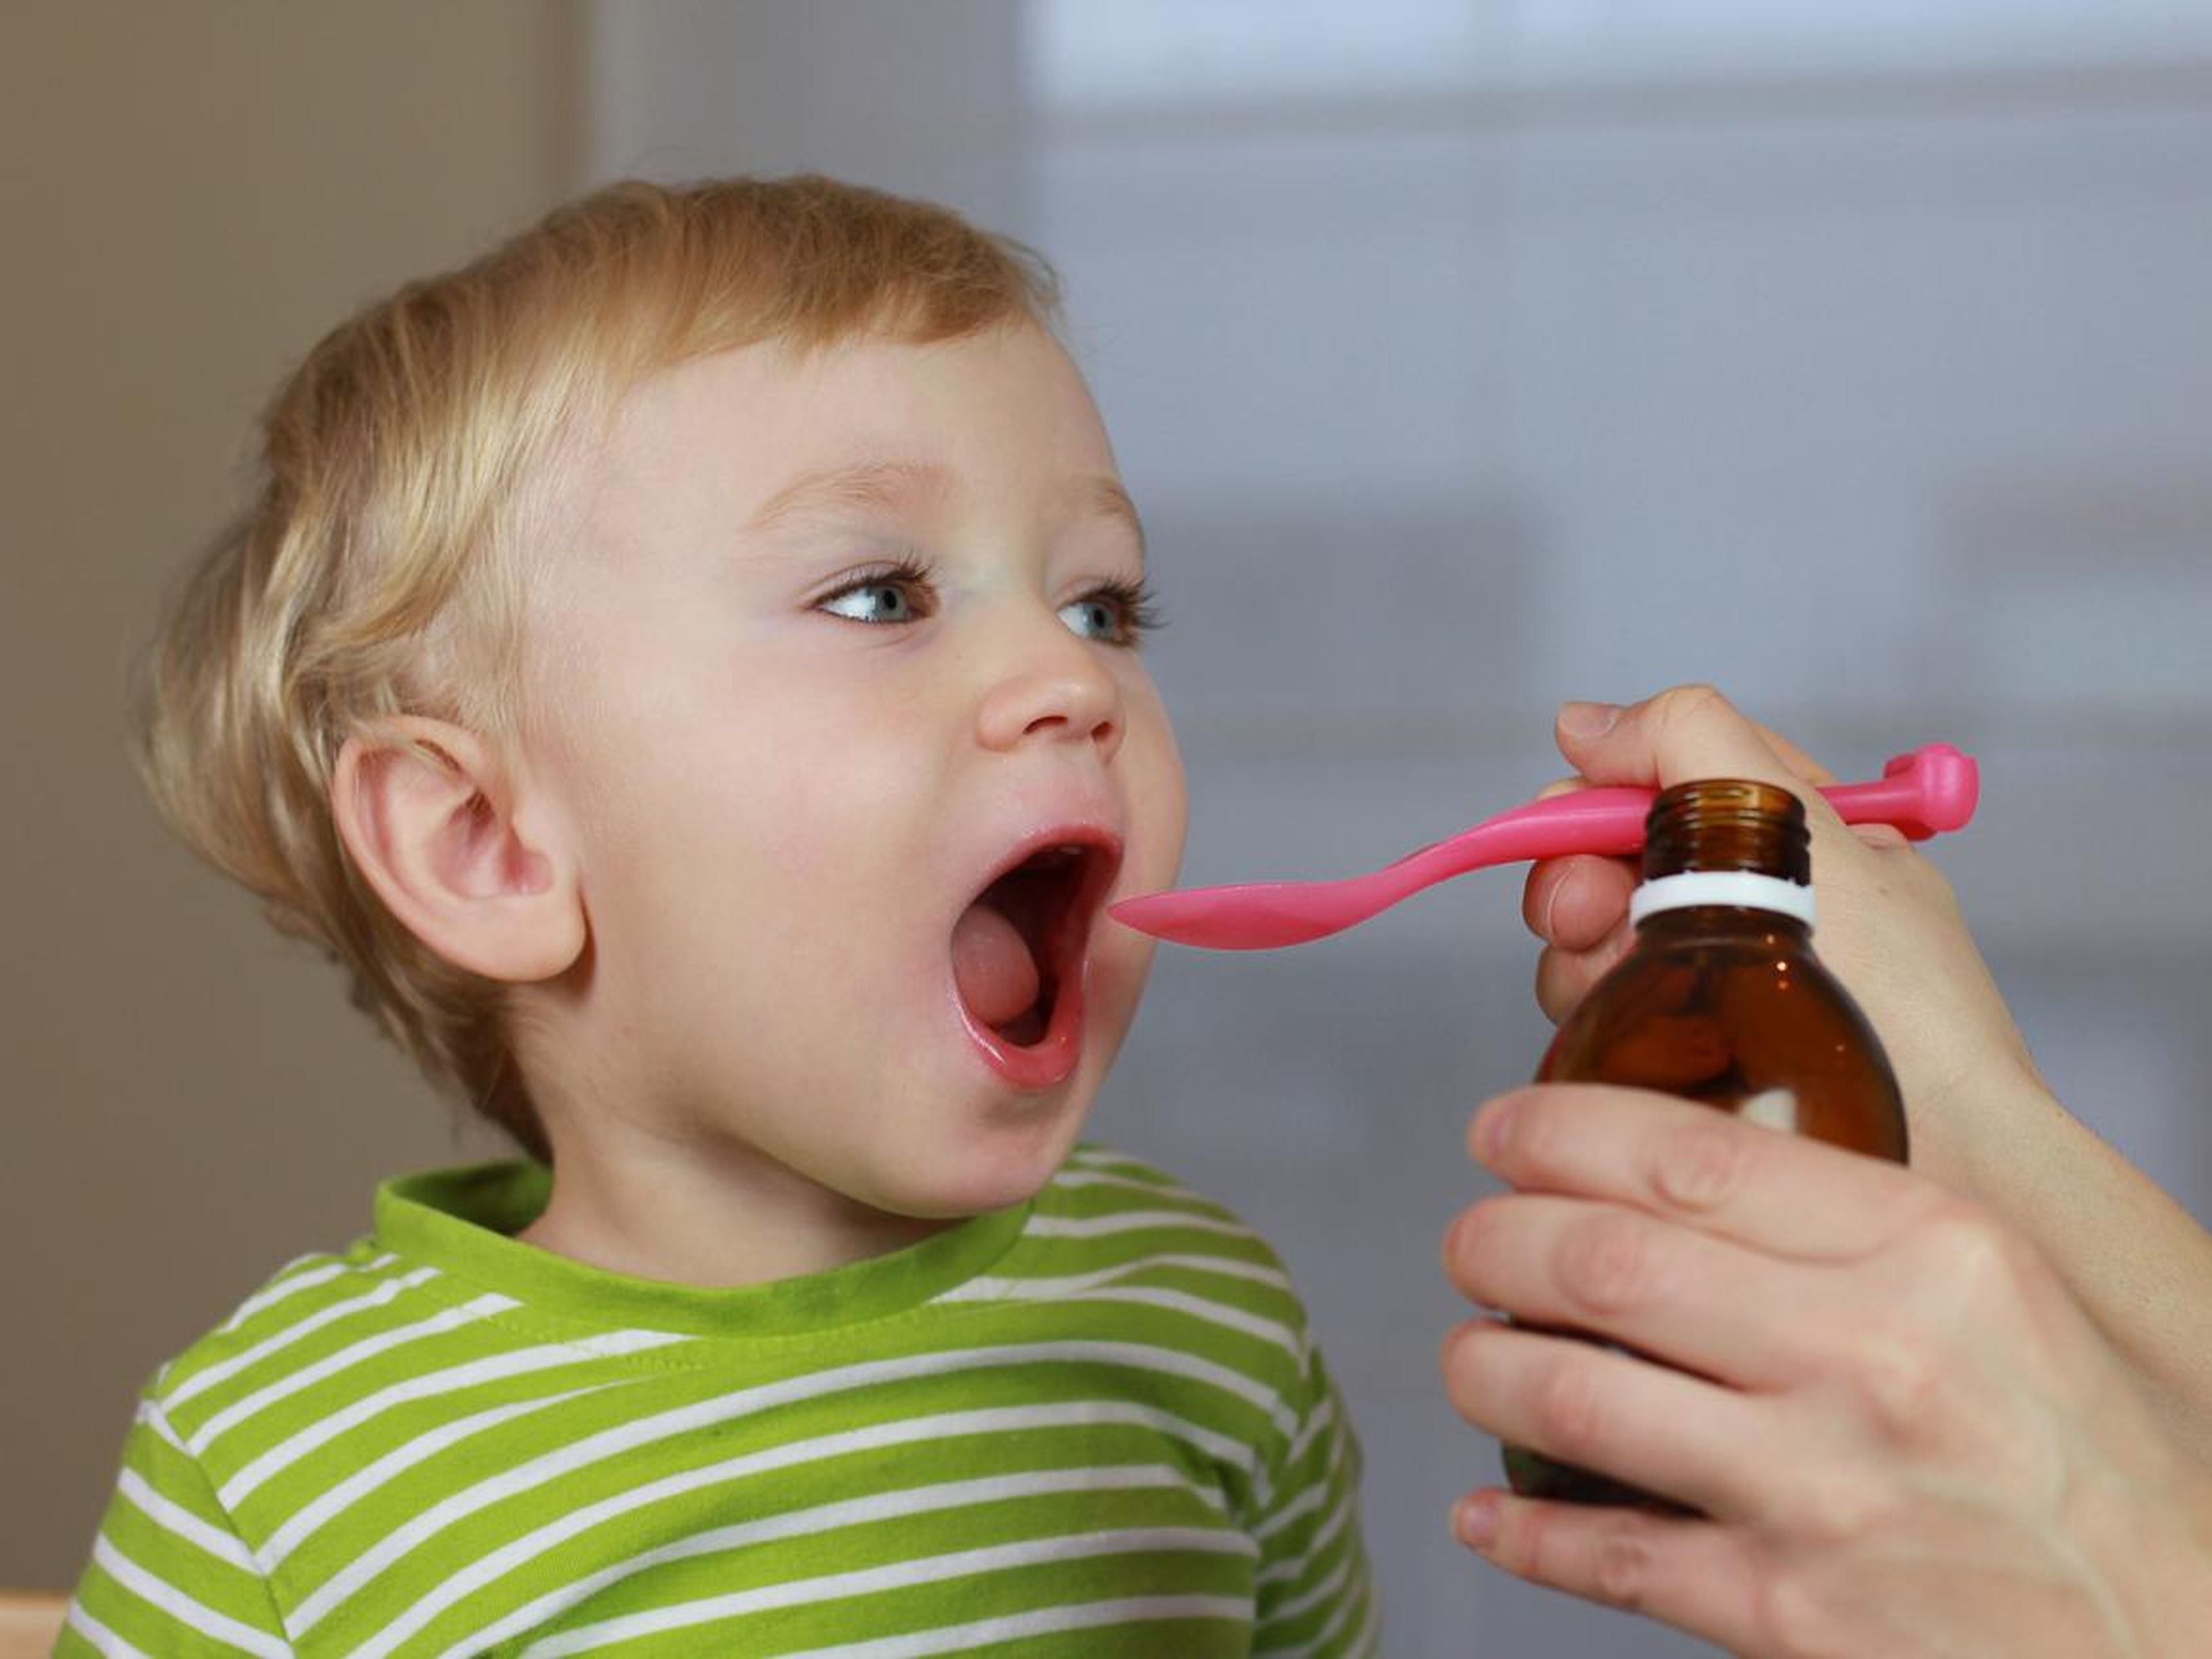 El jarabe para la tos y otros medicamentos para el resfriado de venta sin receta no se recomiendan para niños menores de 6 años.